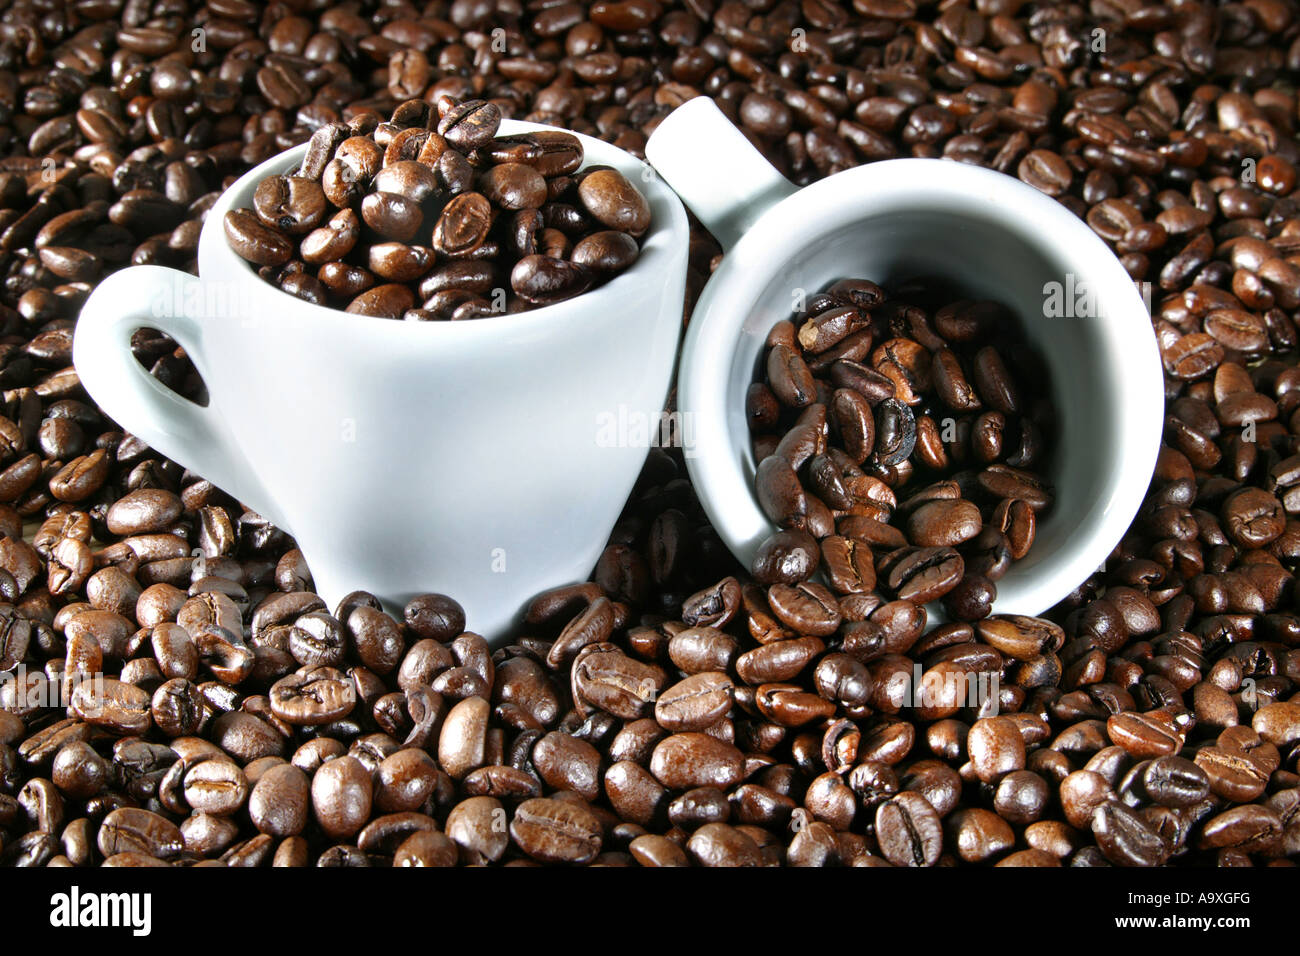 Что можно вместо кофе. Тонна кофе. Кофеокий, кофеглазый, коферотый, Кофеголовый. Чем заменить кофе. Coffee Seed.